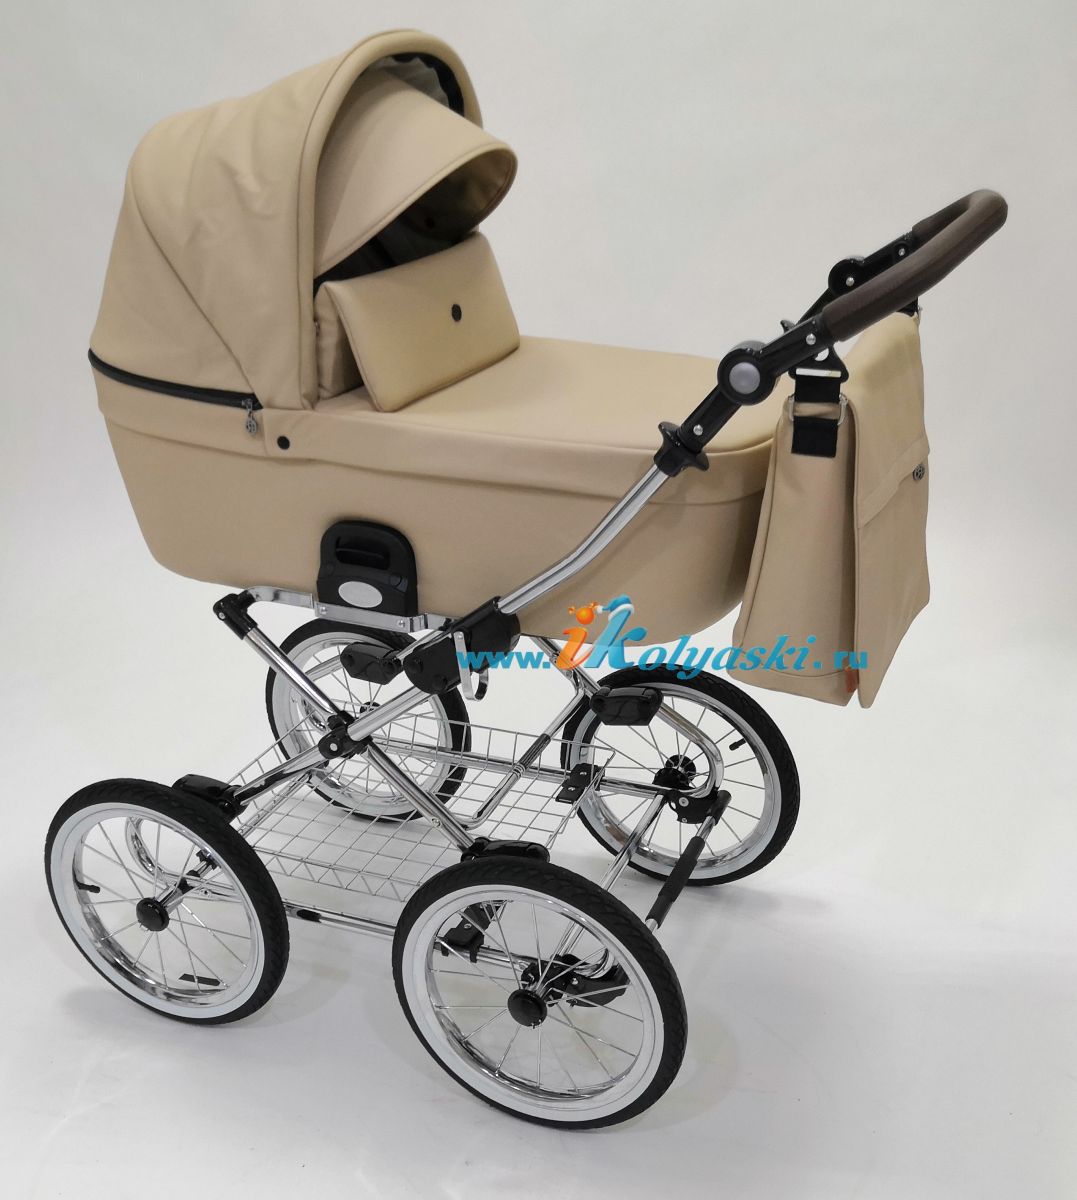 Roan Coss Classic коляска для новорожденных 3 в 1 на больших колесах новые цвета 2020 - купить в интернет-магазине Иколяски в Москве с доставкой по РФ - цвет Cappuccino